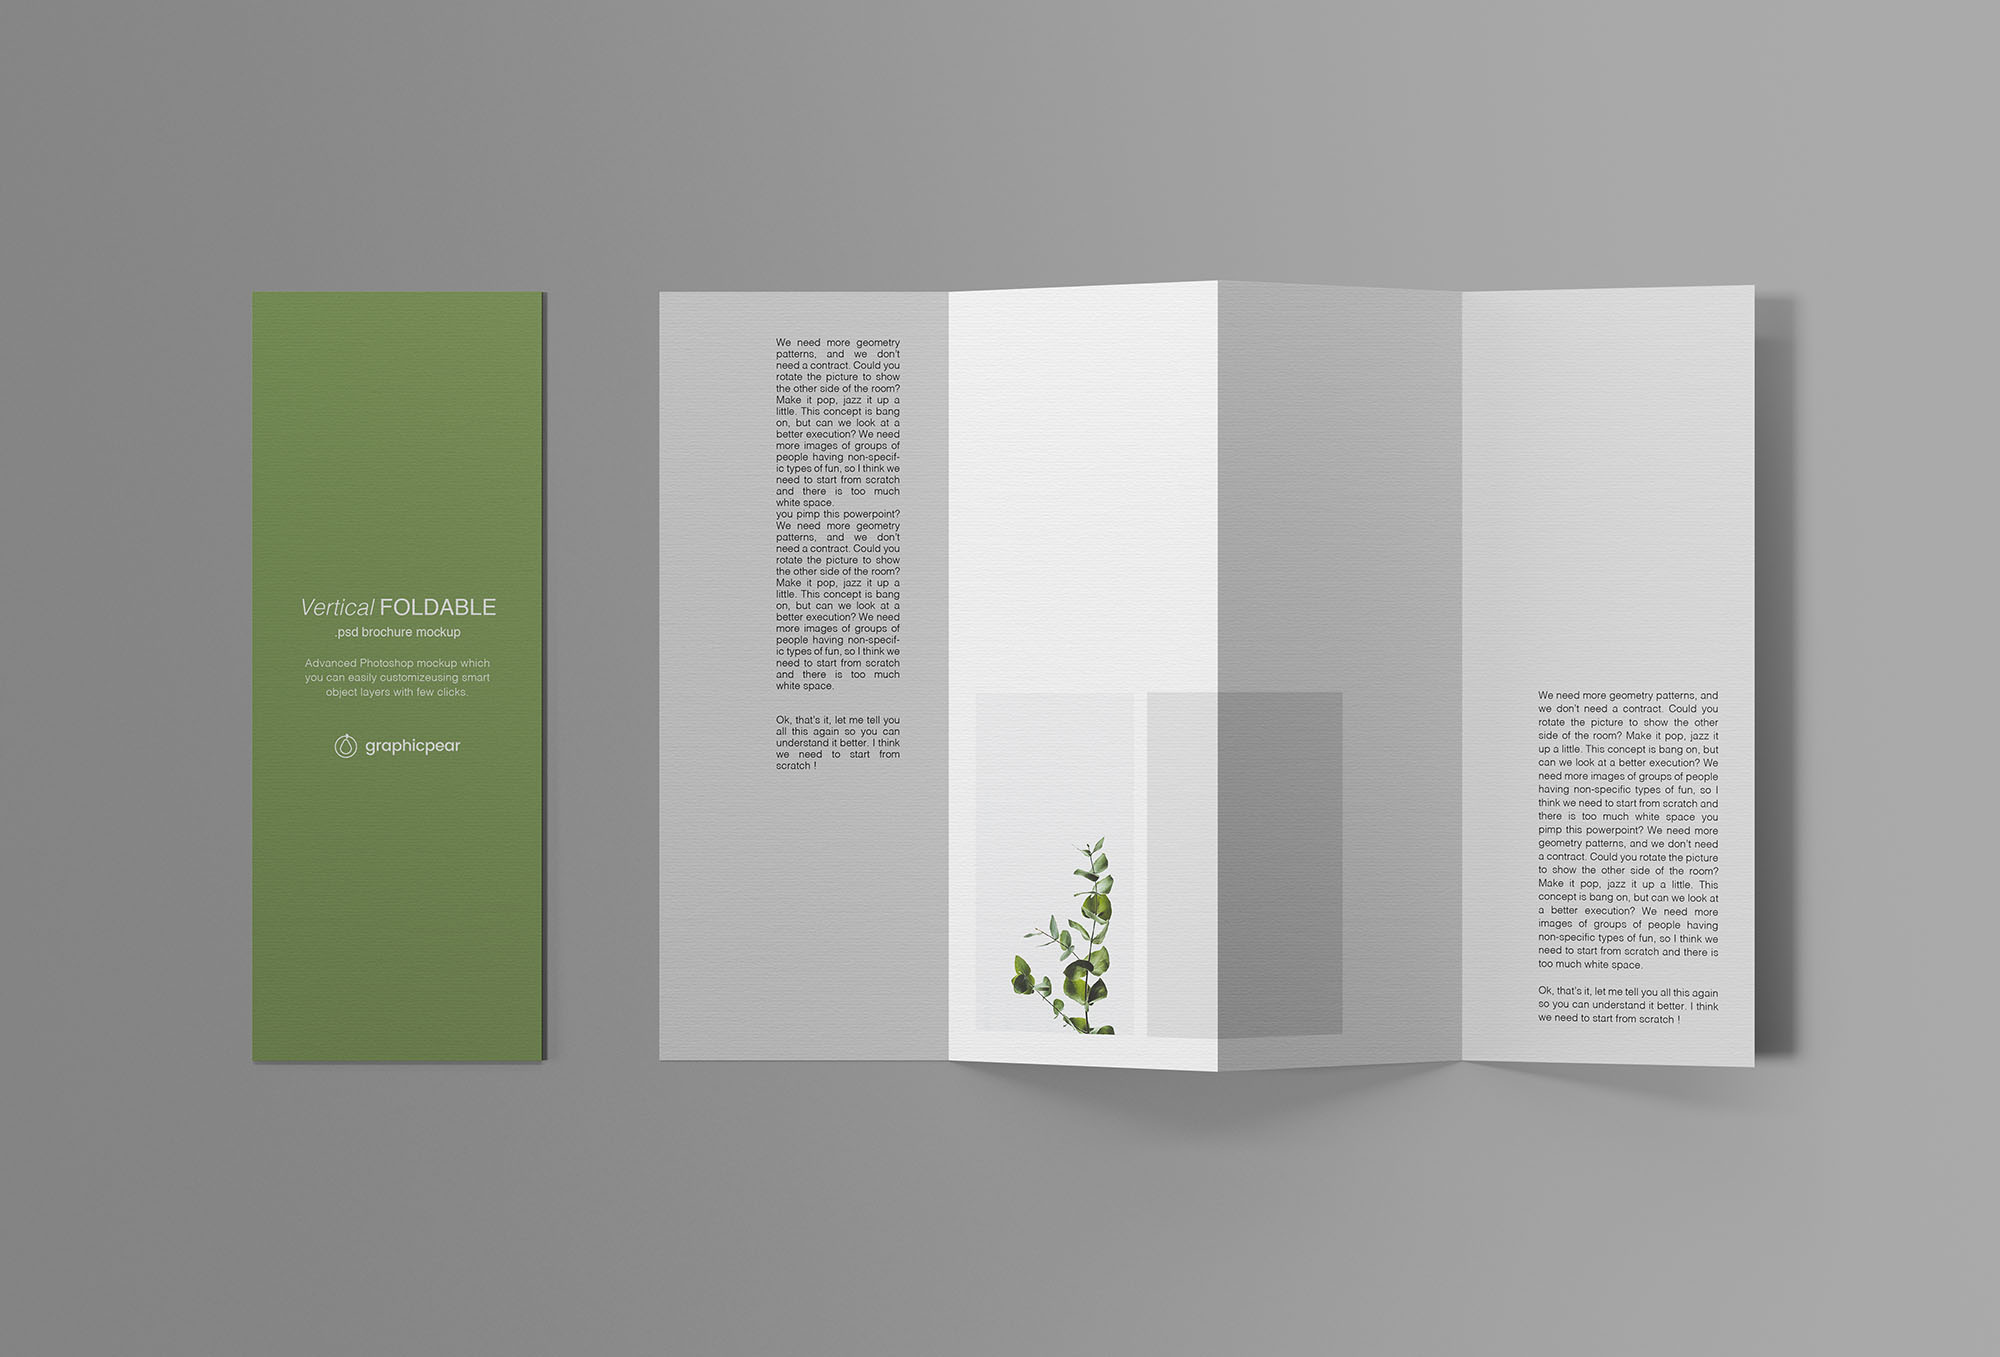 垂直折页传单设计效果图预览样机 Vertical Foldable Brochure Mockup插图